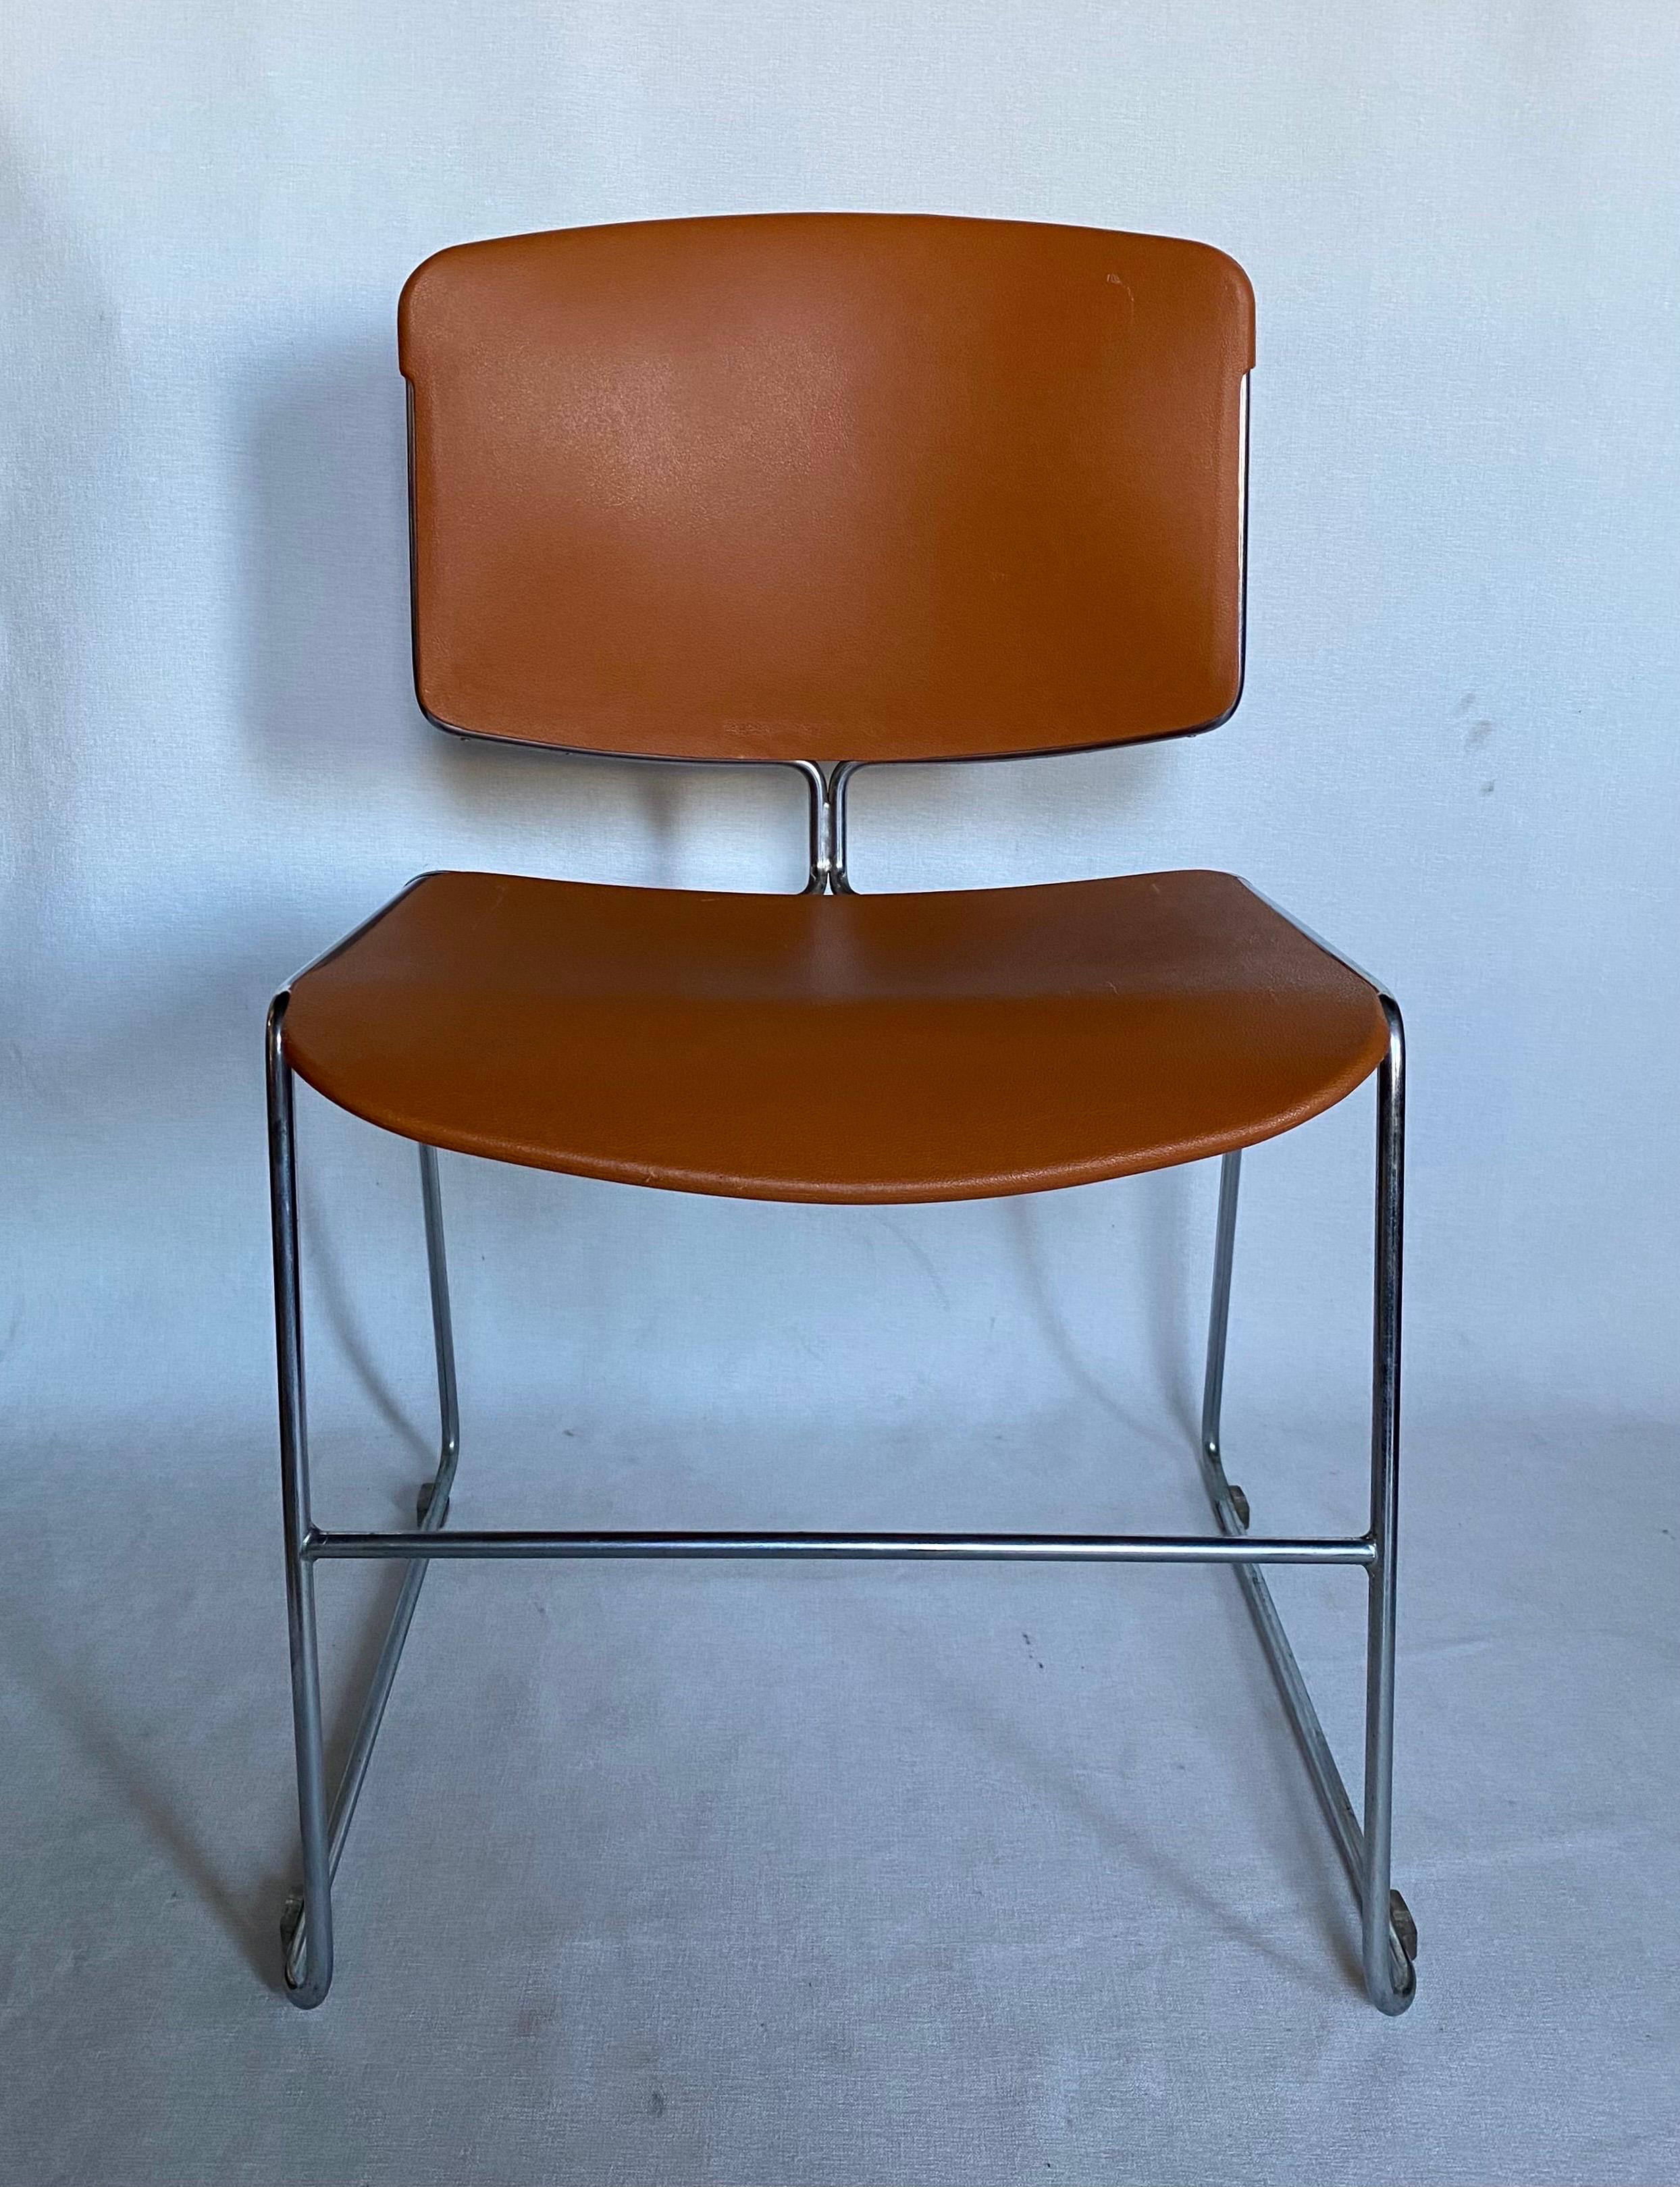 Fauteuils de salle de conférence Max Max-Stacker de Steelcase, de style moderne du milieu du siècle, en orange emblématique. Ces confortables chaises de salon ou de bureau sont dotées d'une assise et d'un dossier incurvés moulés et d'une structure